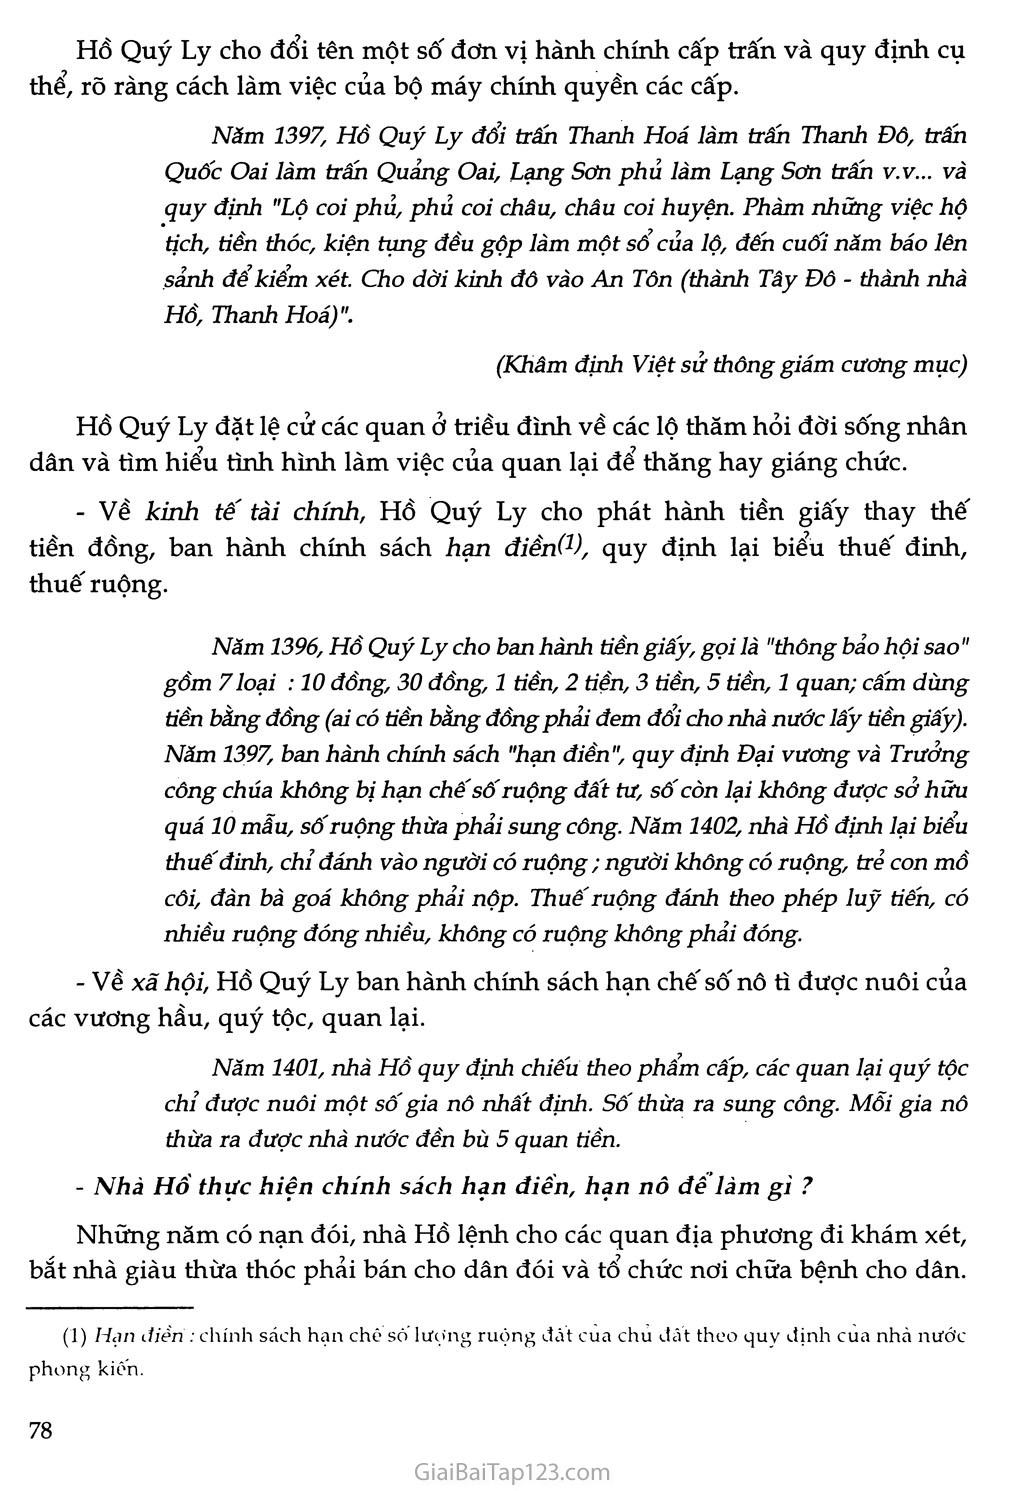 Bài 16 - Sự suy sụp của nhà Trần cuối thế kỉ XIV trang 5